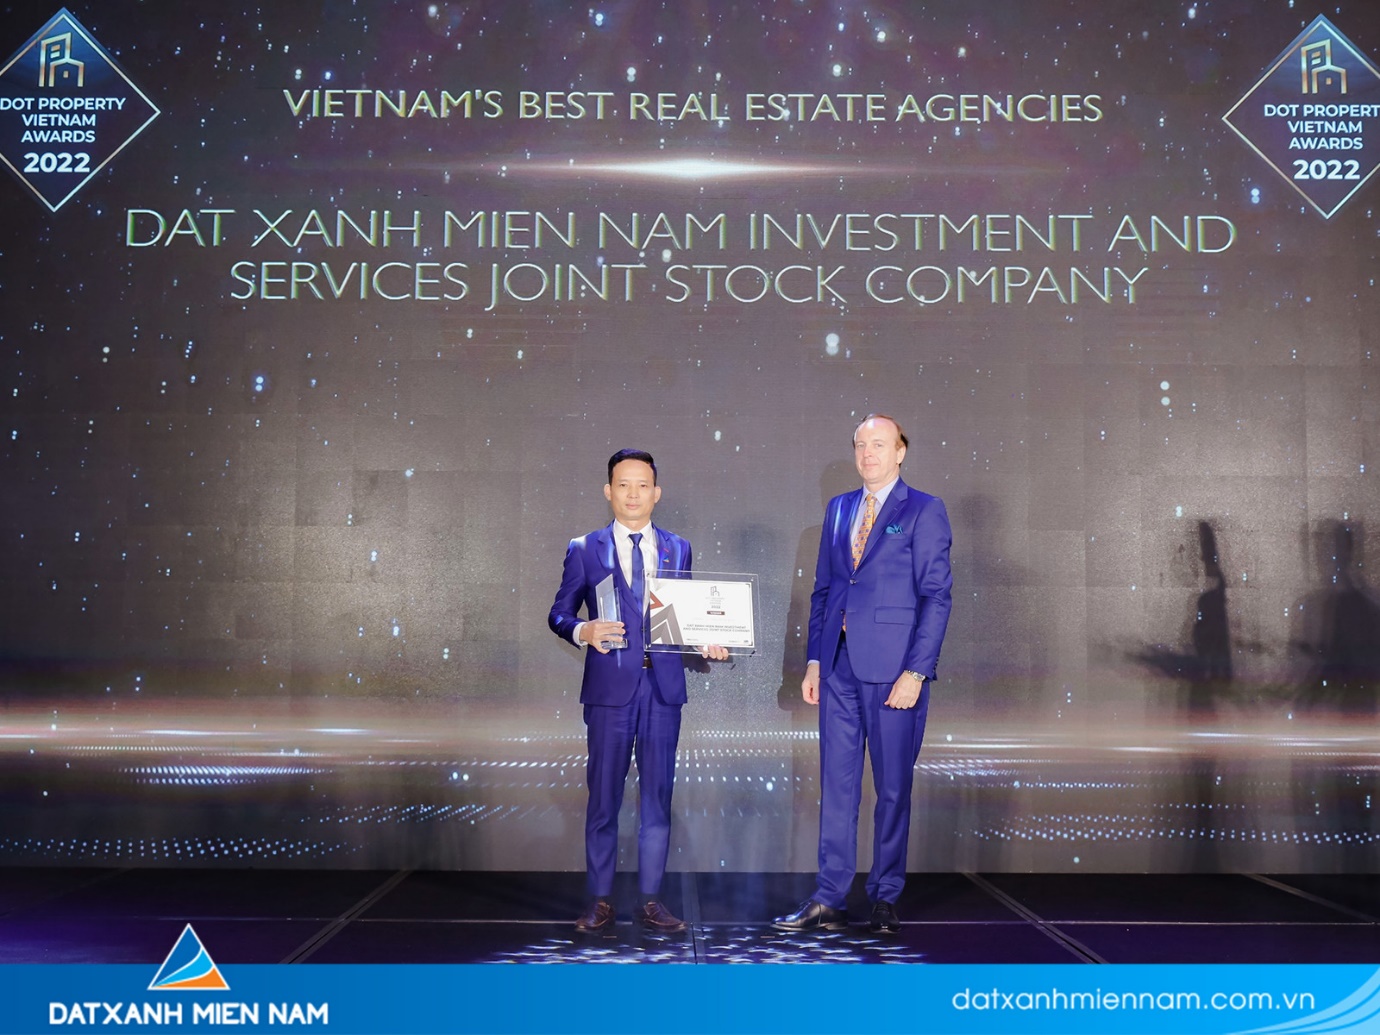 Đất Xanh Miền Nam đã xuất sắc trở thành Công ty phân phối bất động sản tốt nhất Việt Nam tại Dot Property Awards - Ảnh: Đất Xanh Miền Nam